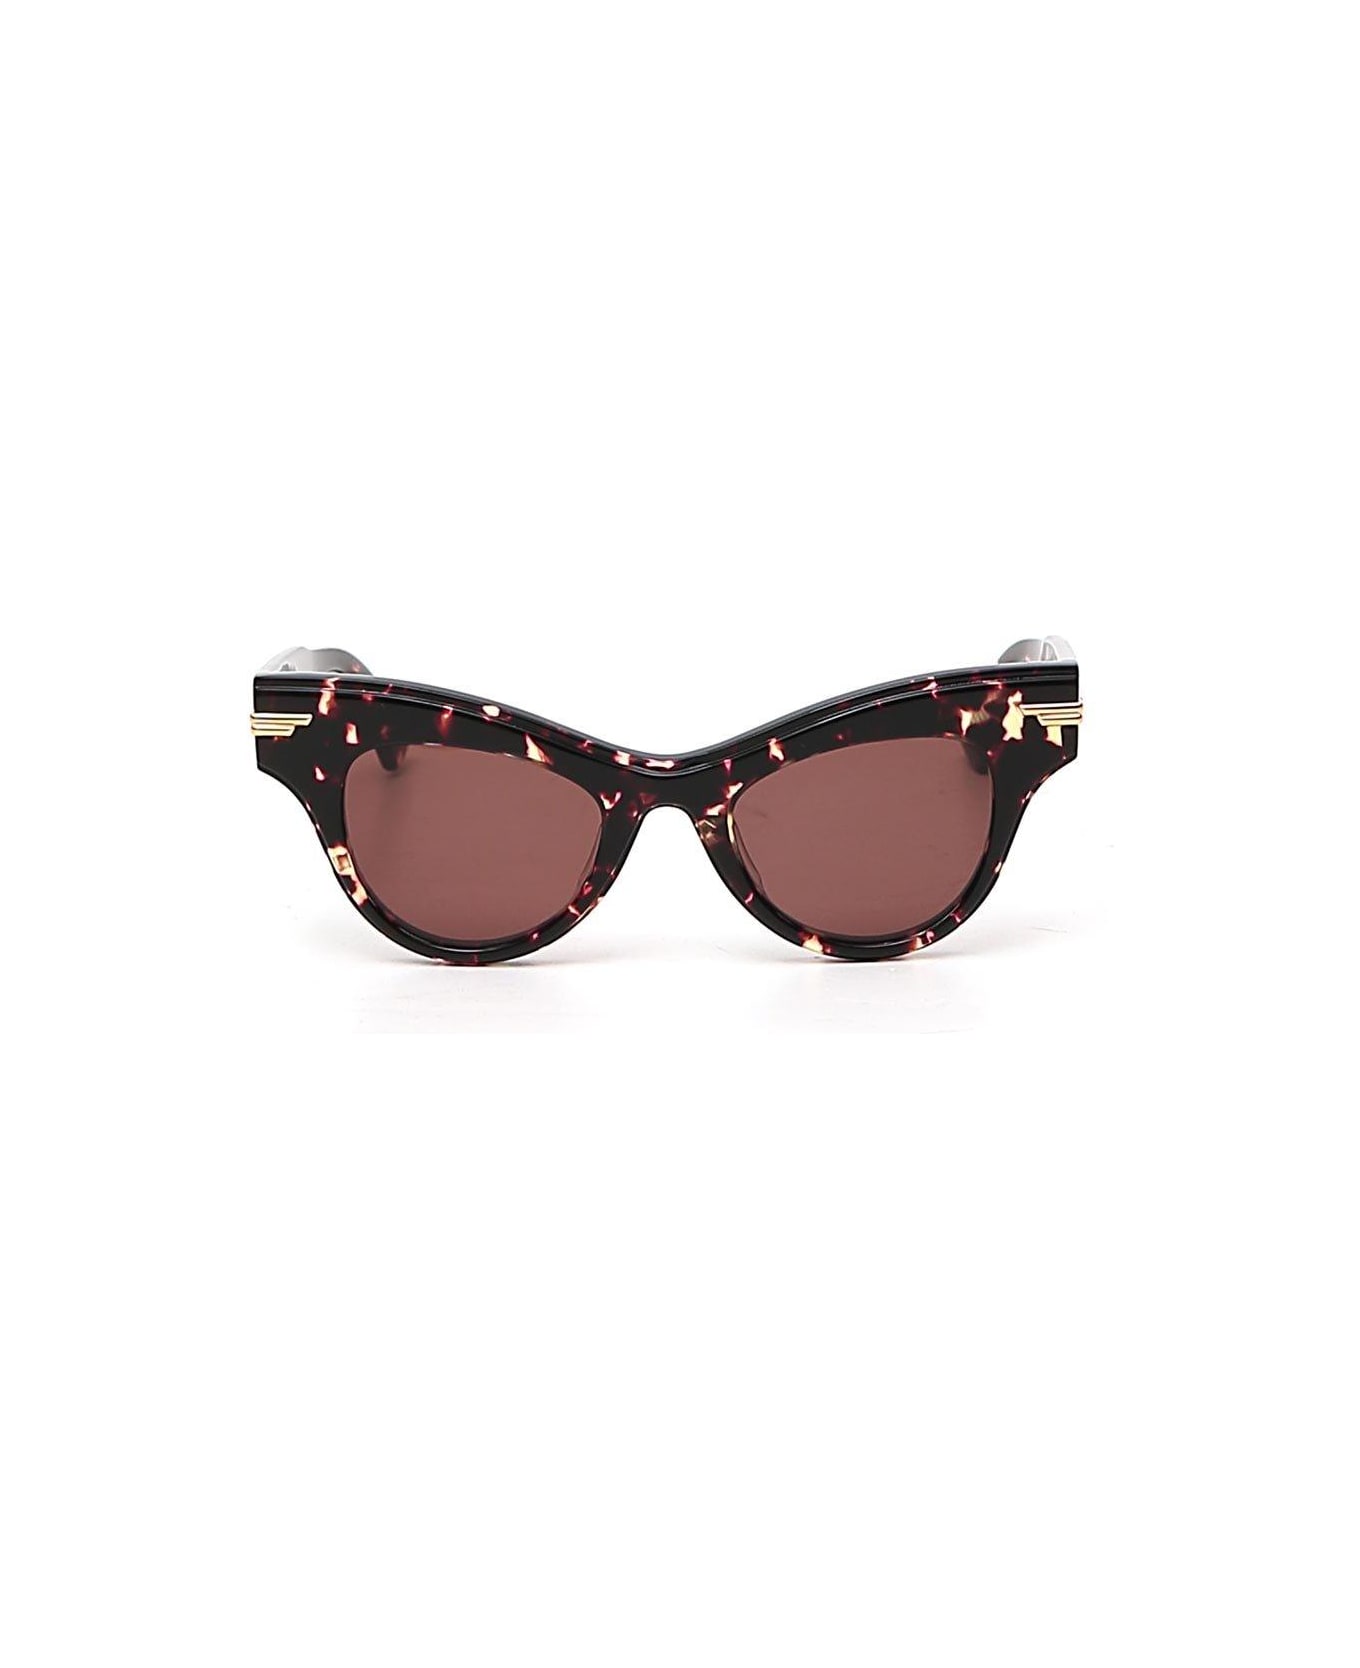 Bottega Veneta Cat-eye Frame Sunglasses - BROWN